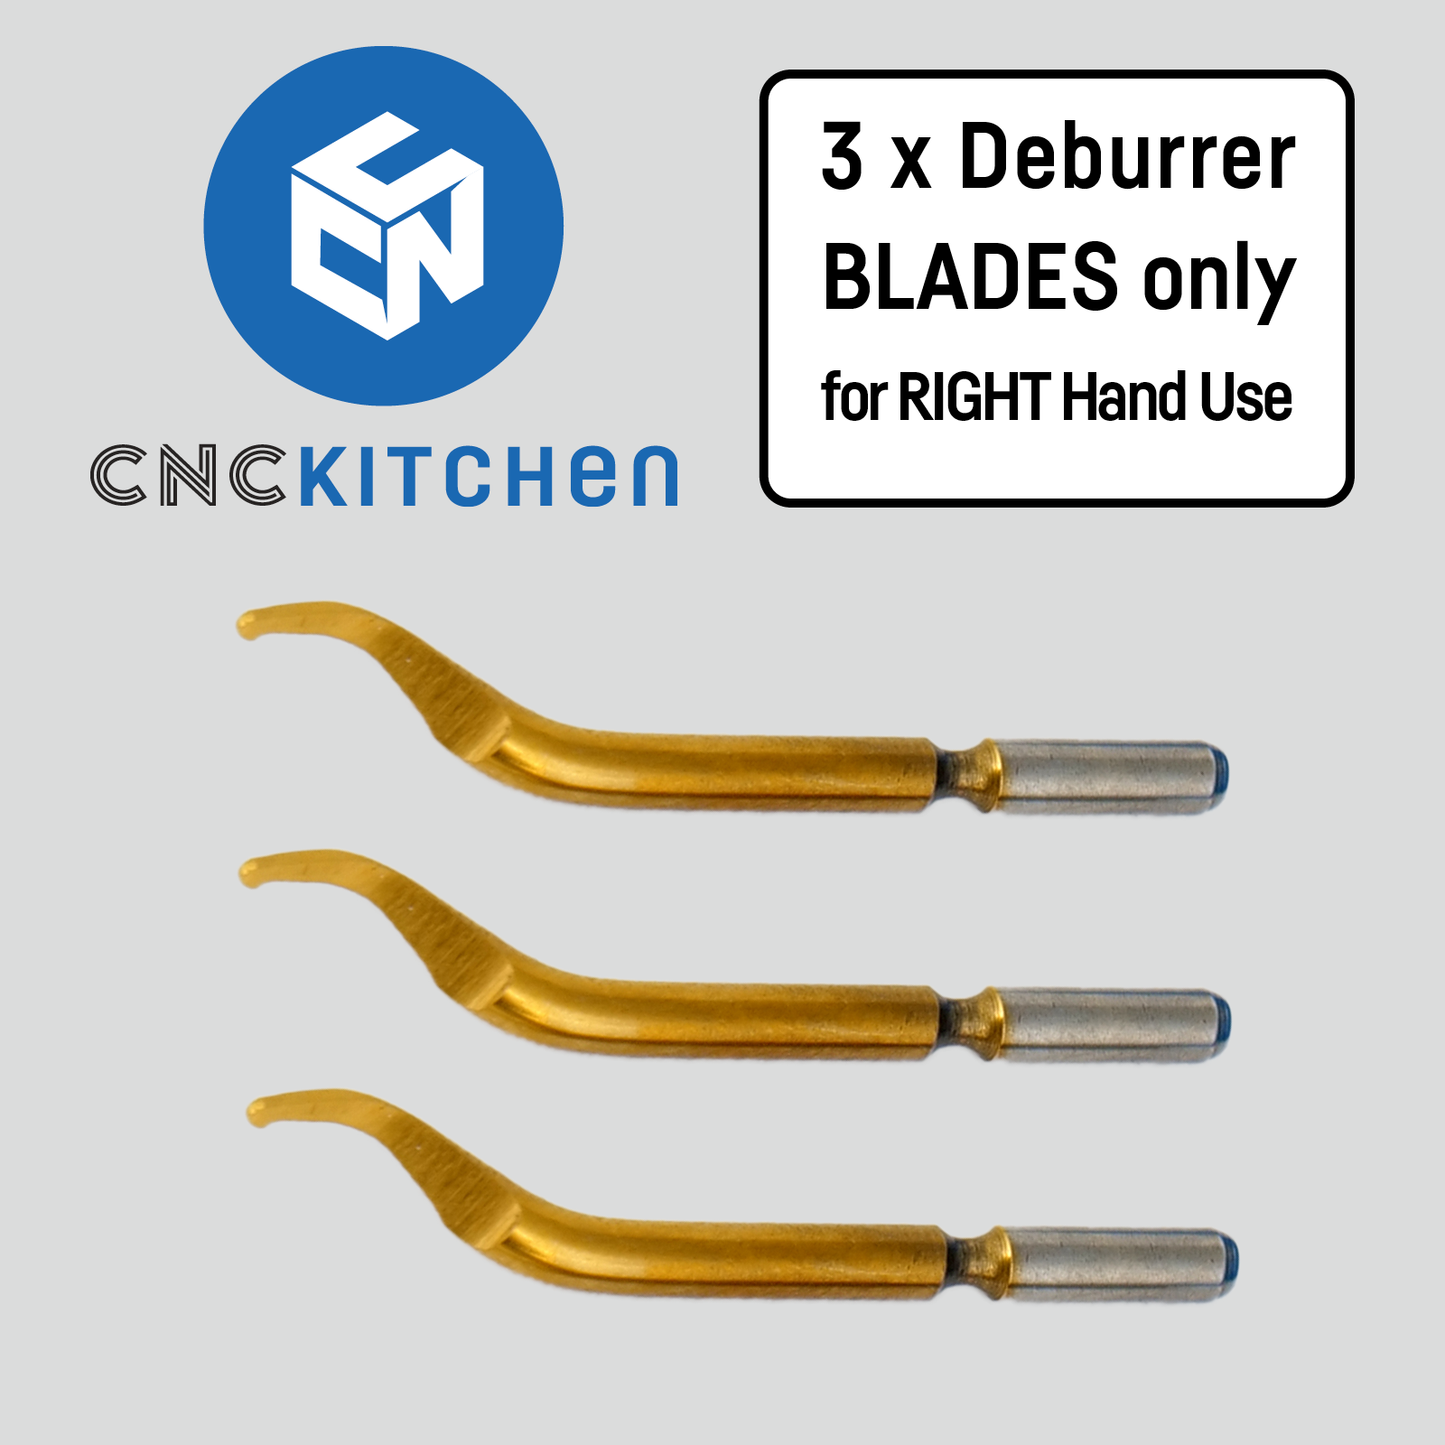 3x Entgrater Klingen für Rechtshänder / 3x Deburrer Blades for Right Hand Use